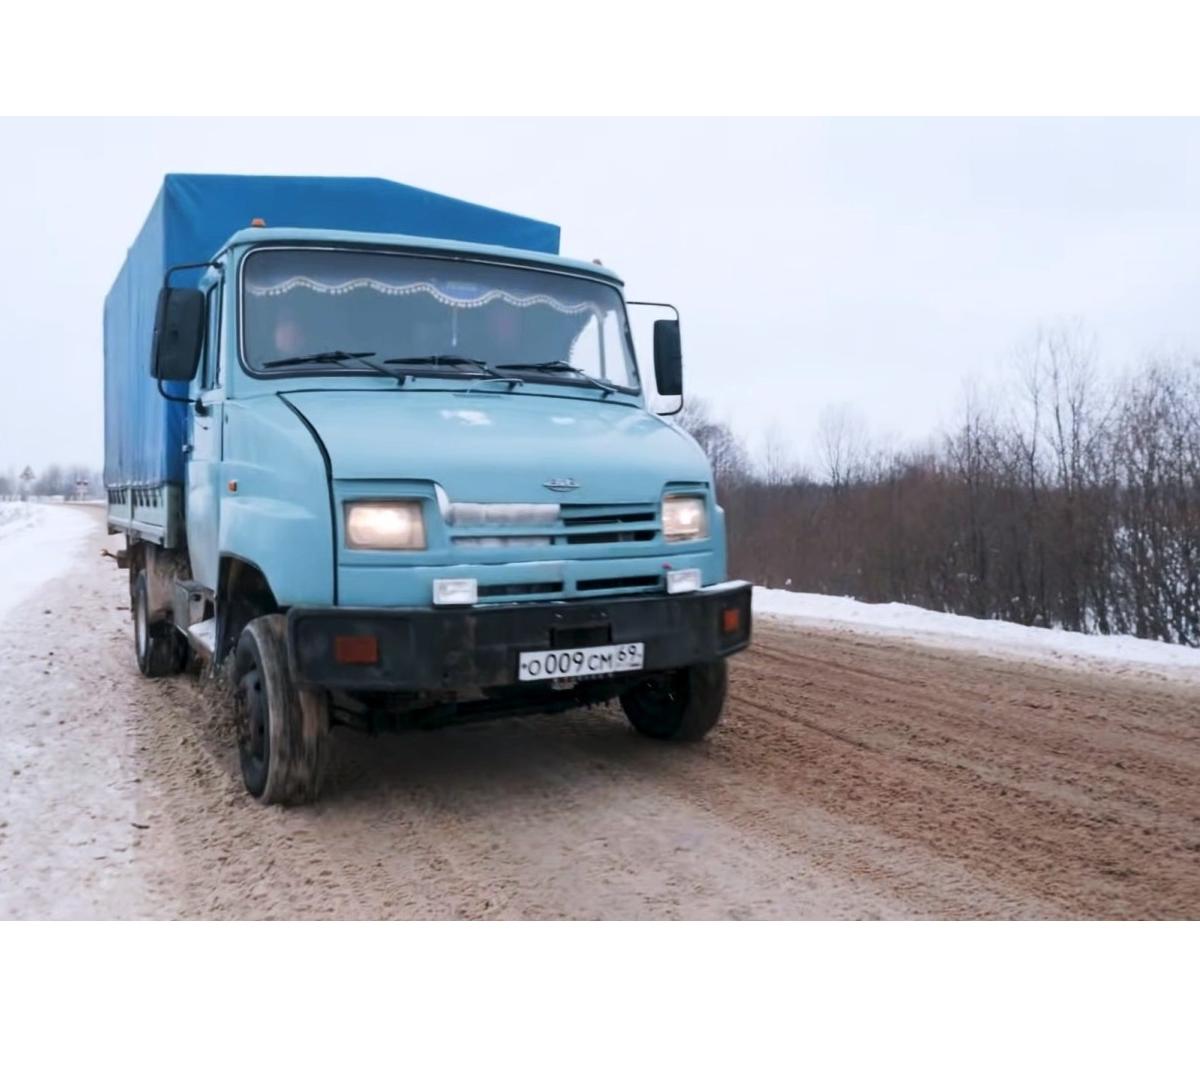 ZIL-5301 "Bull", yanlış endekse sahip bir kamyon